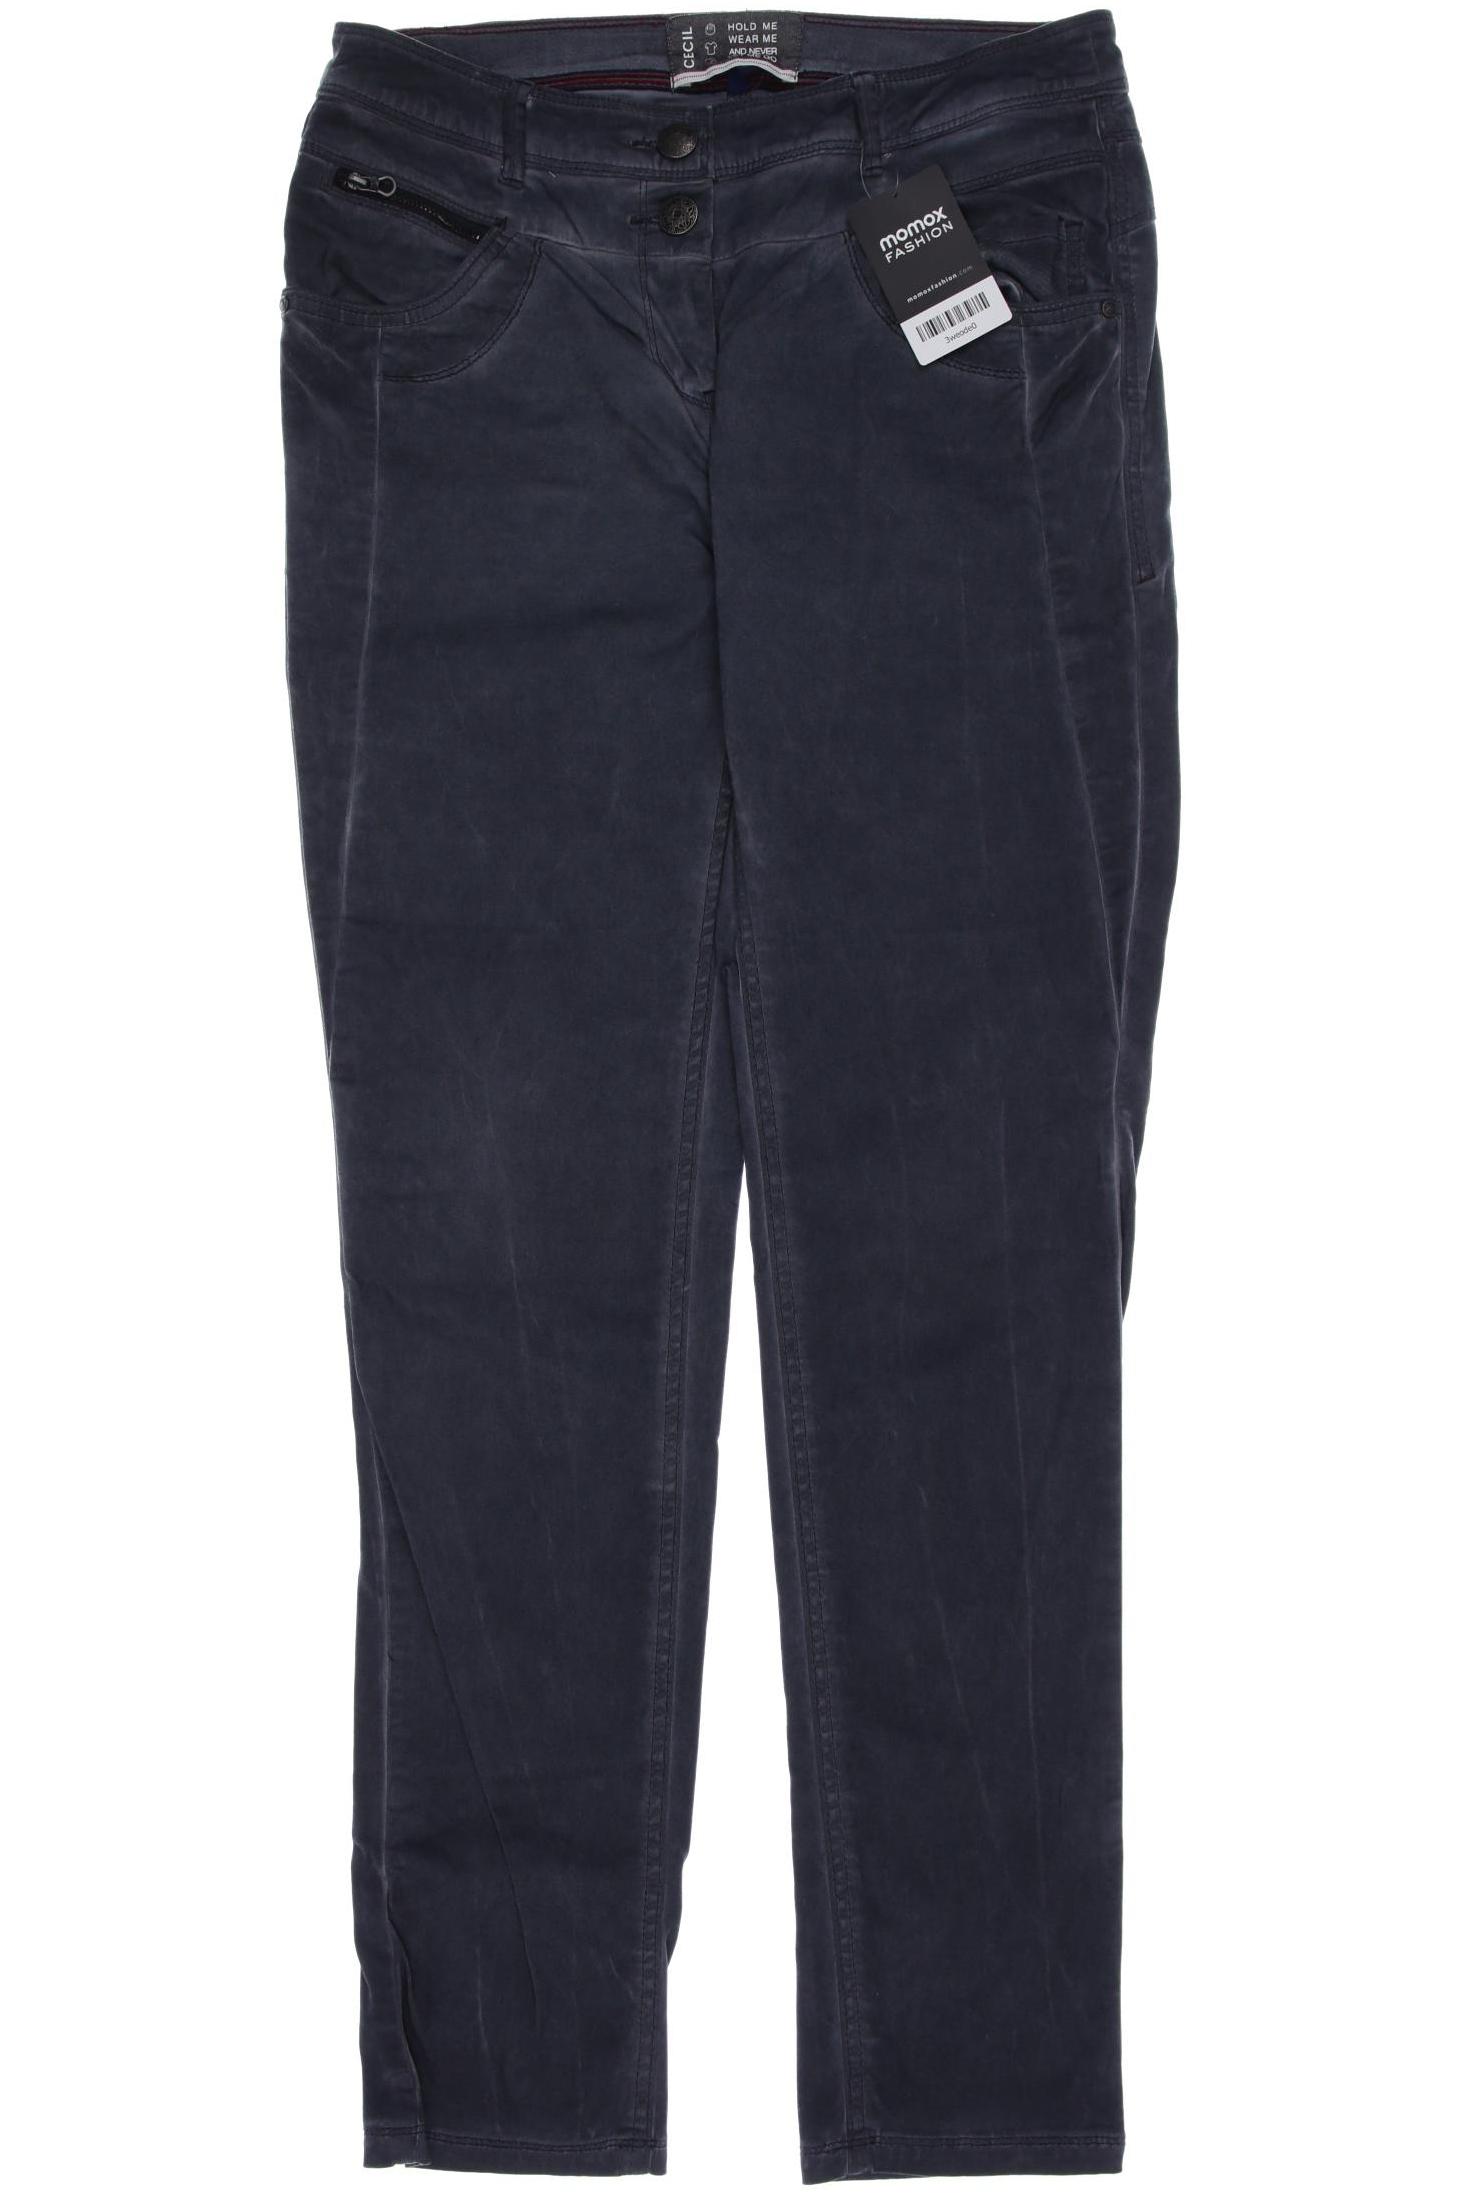 Cecil Damen Jeans, grau, Gr. 38 von cecil